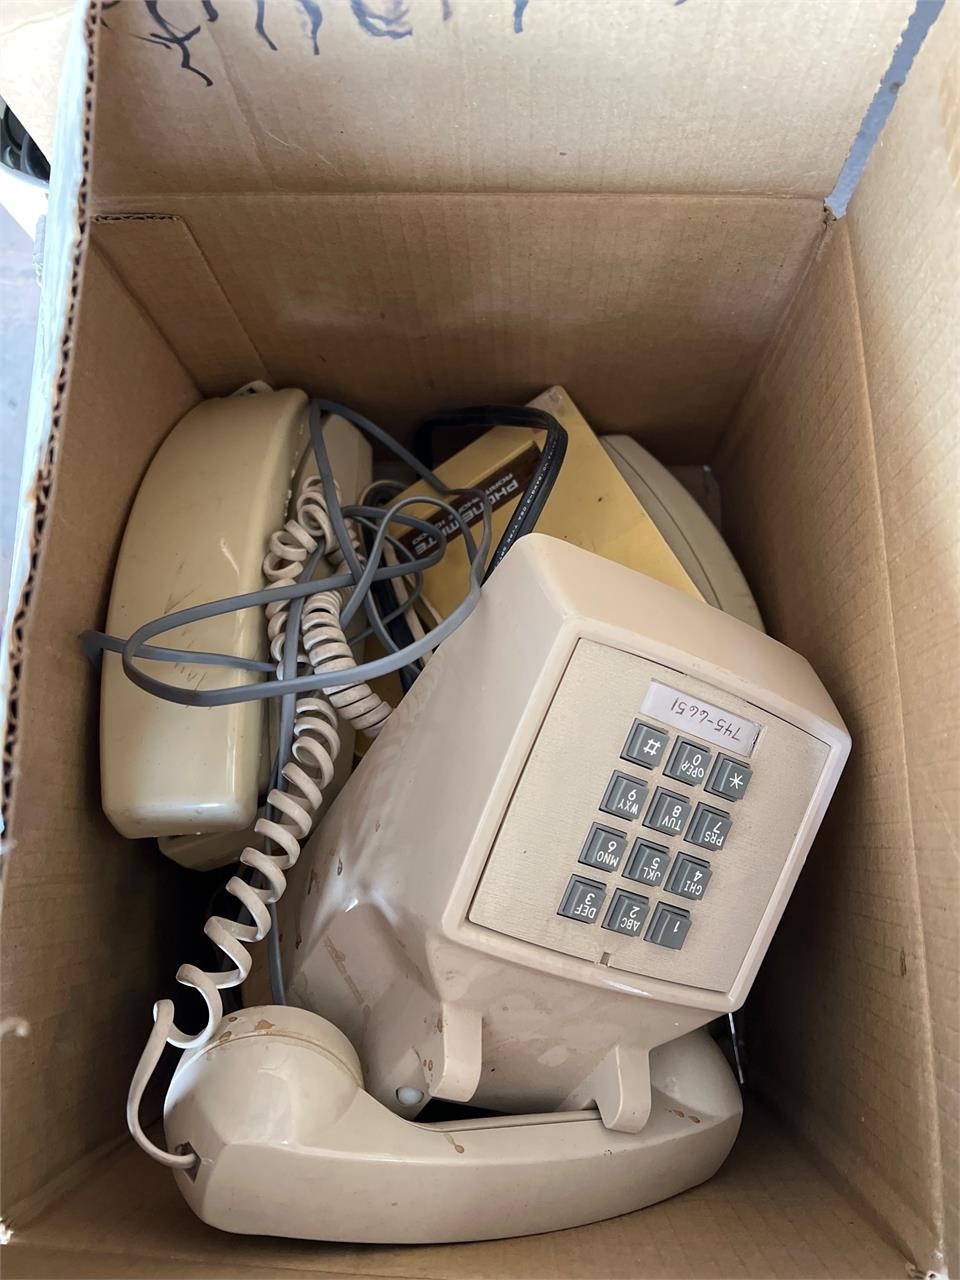 Box of vintage landline phones